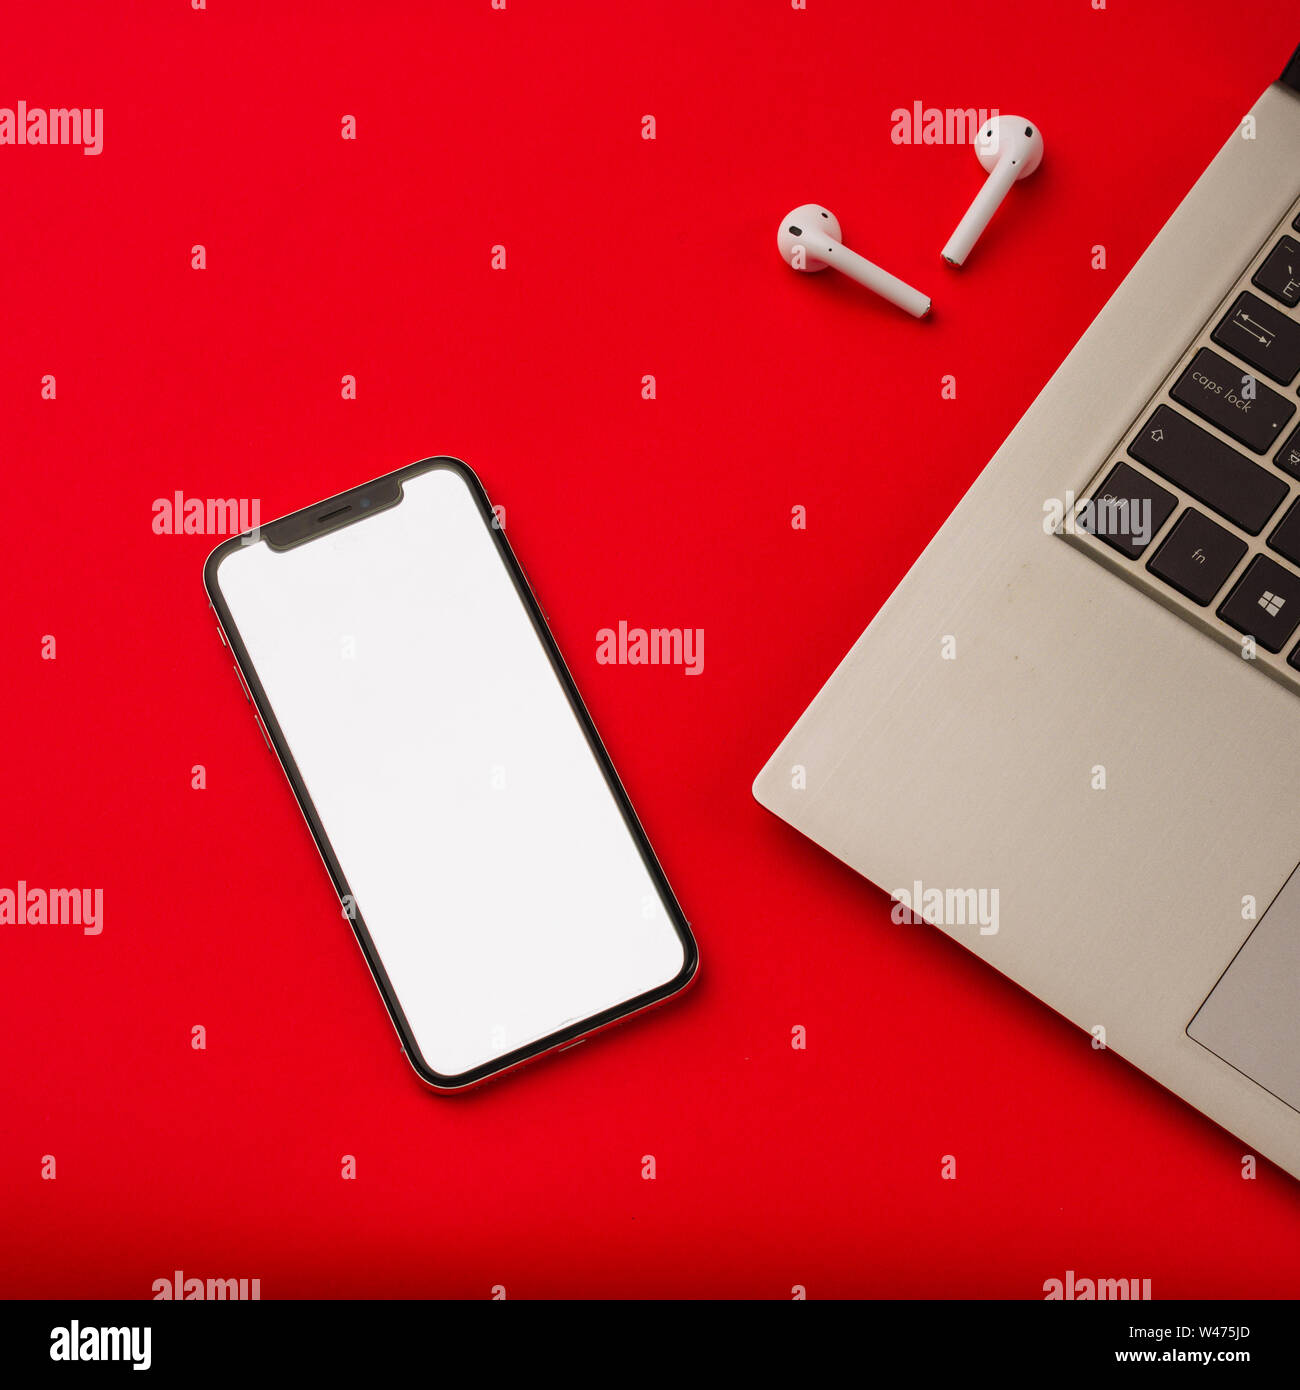 Tula, Russia - maggio 24,2019: Apple iPhone X e Airpods su sfondo rosso con notebook. Lo schermo dello smartphone è bianco. Mockup. Foto Stock